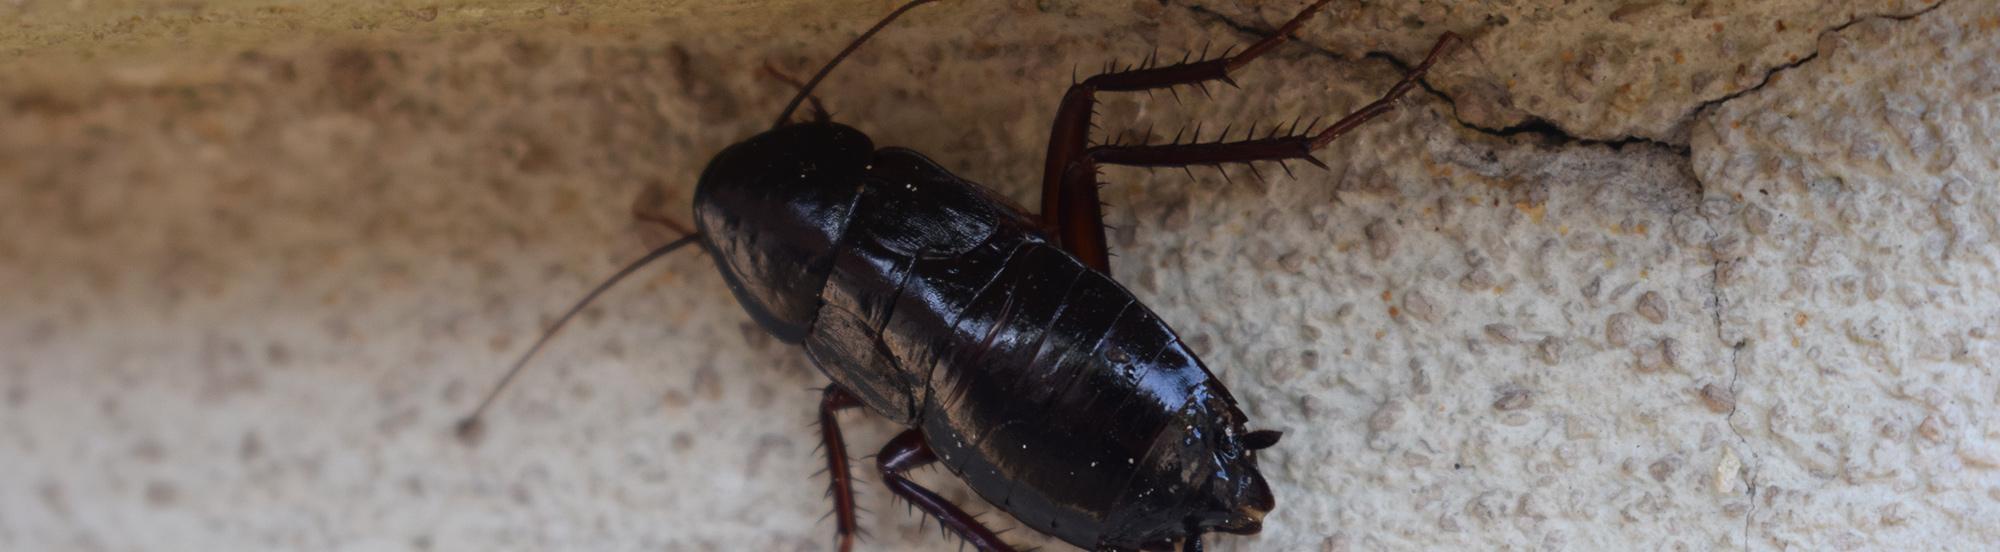 adult oriental cockroach